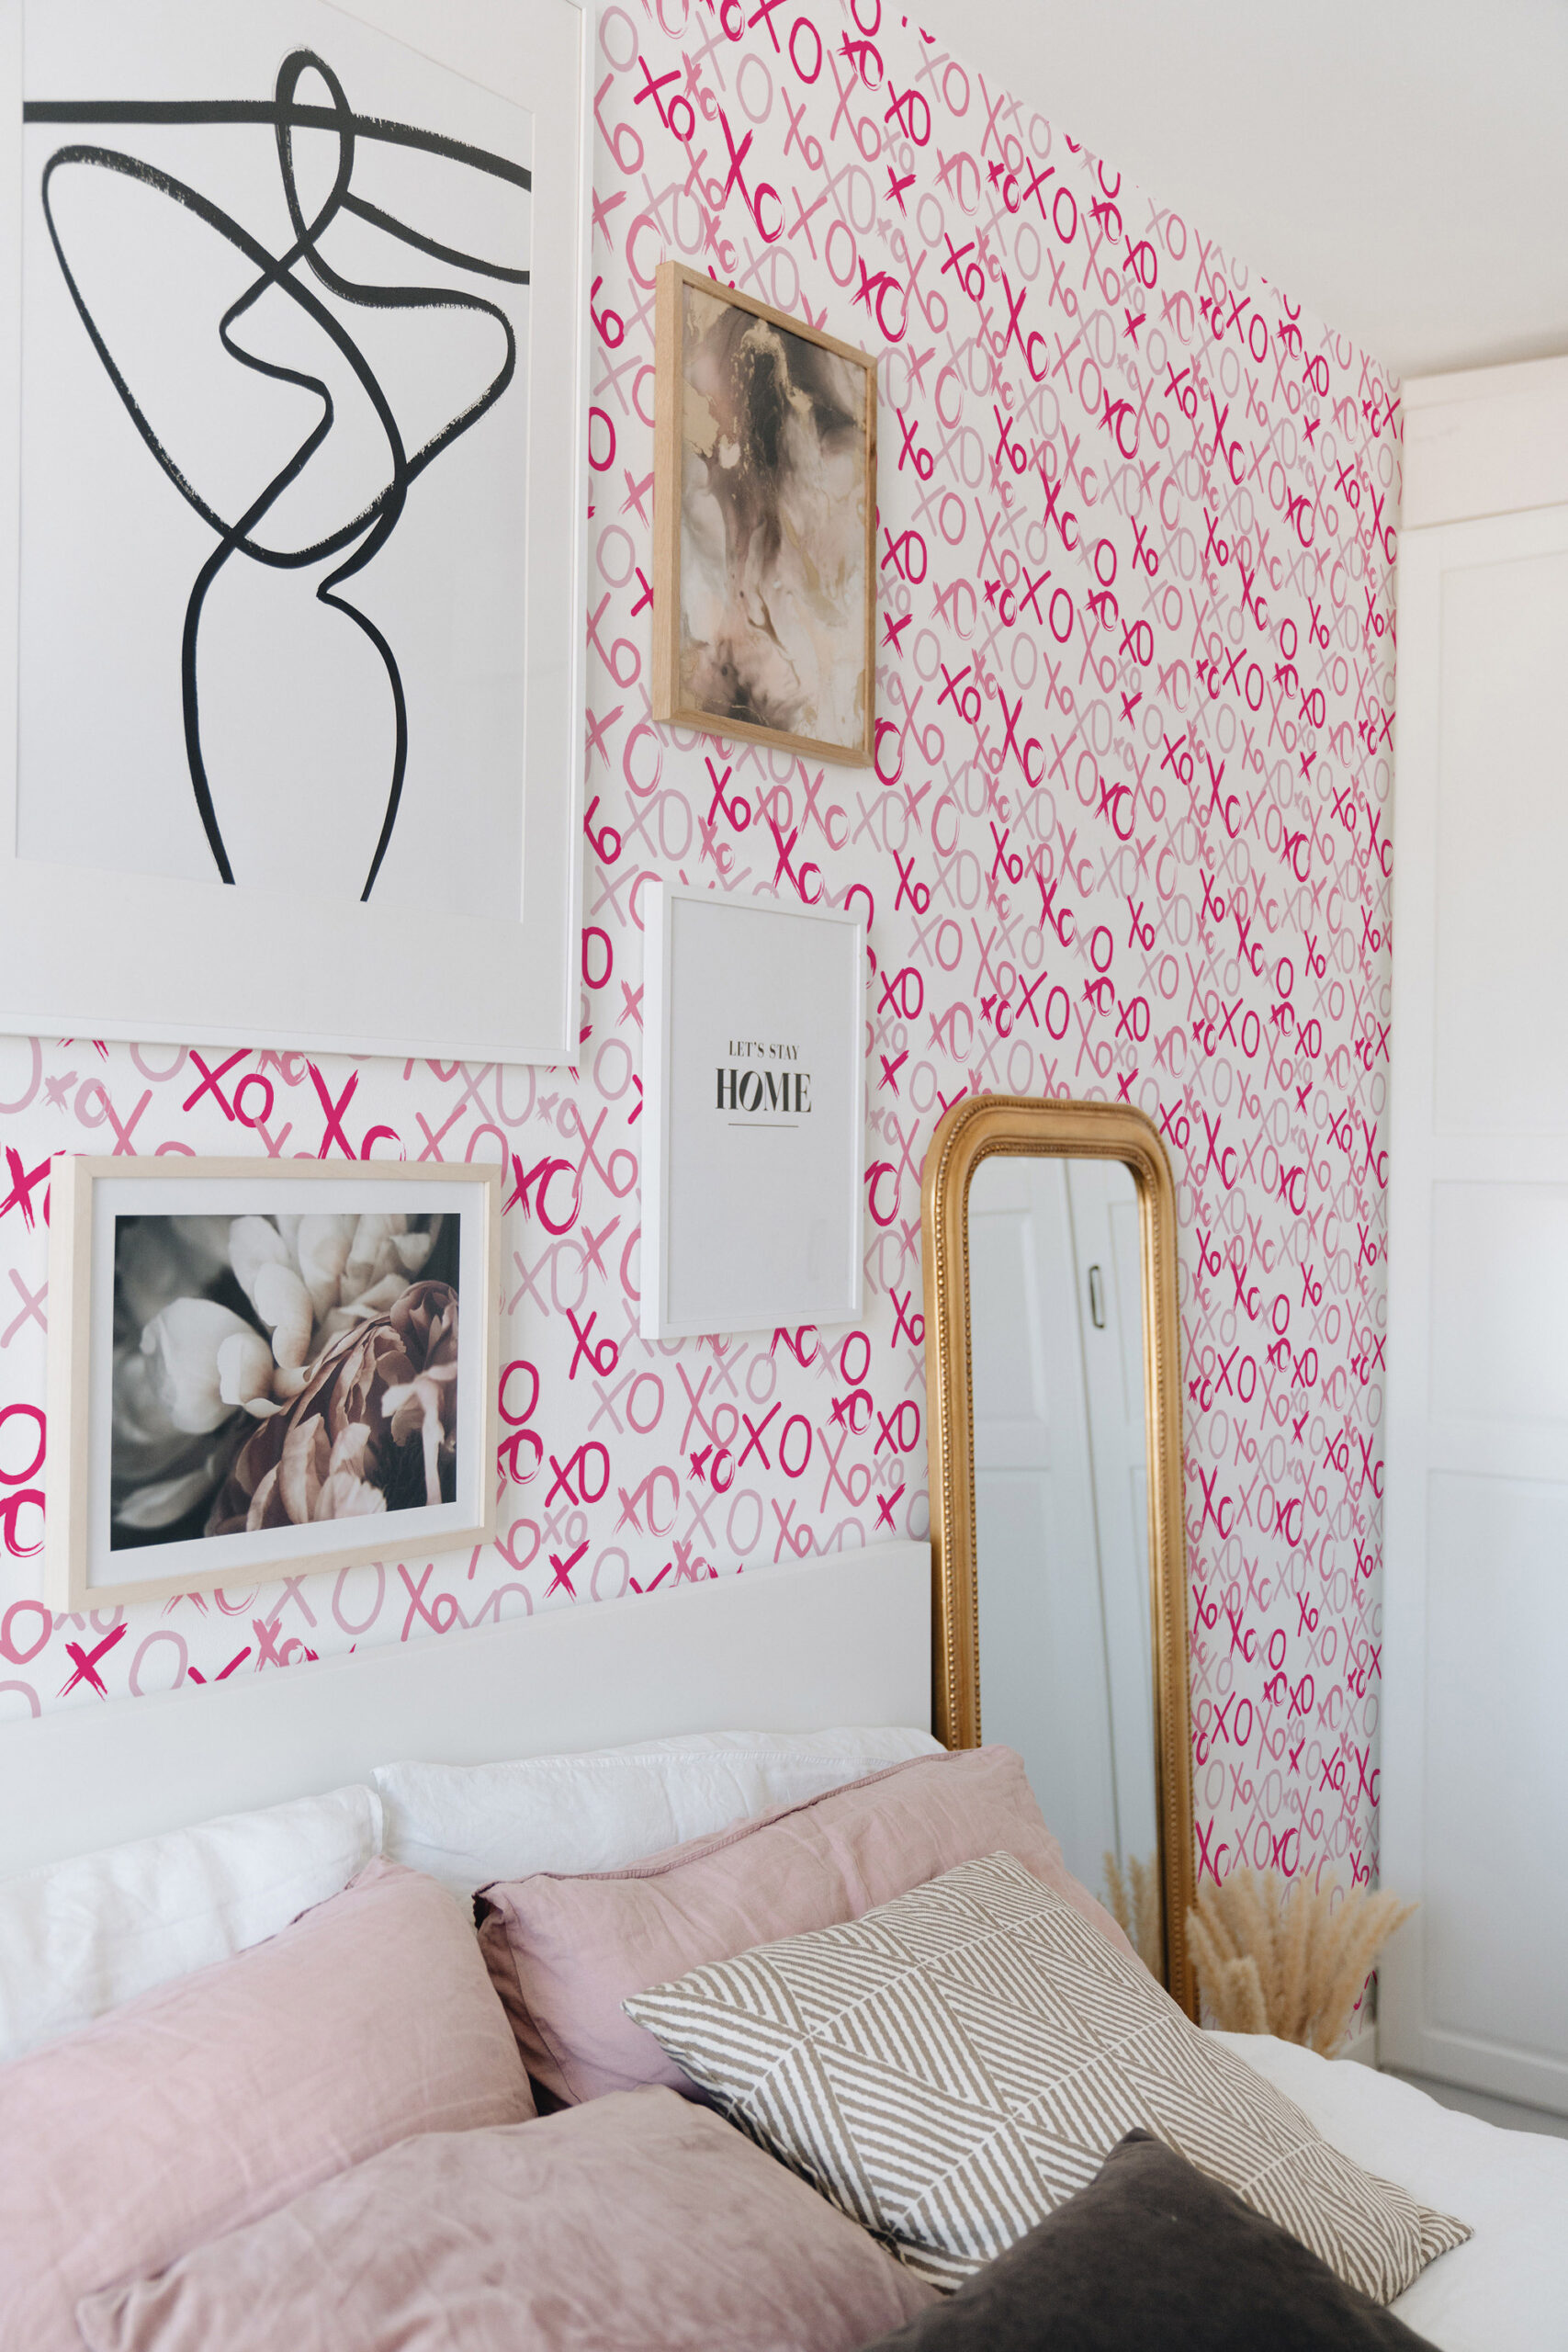 wallpaper design for bedroom ,wallpapers bedroom walls,bedroom wallpaper  price ,3d wallpaper for bedroom walls ,Bedroom Designer Wallpaper